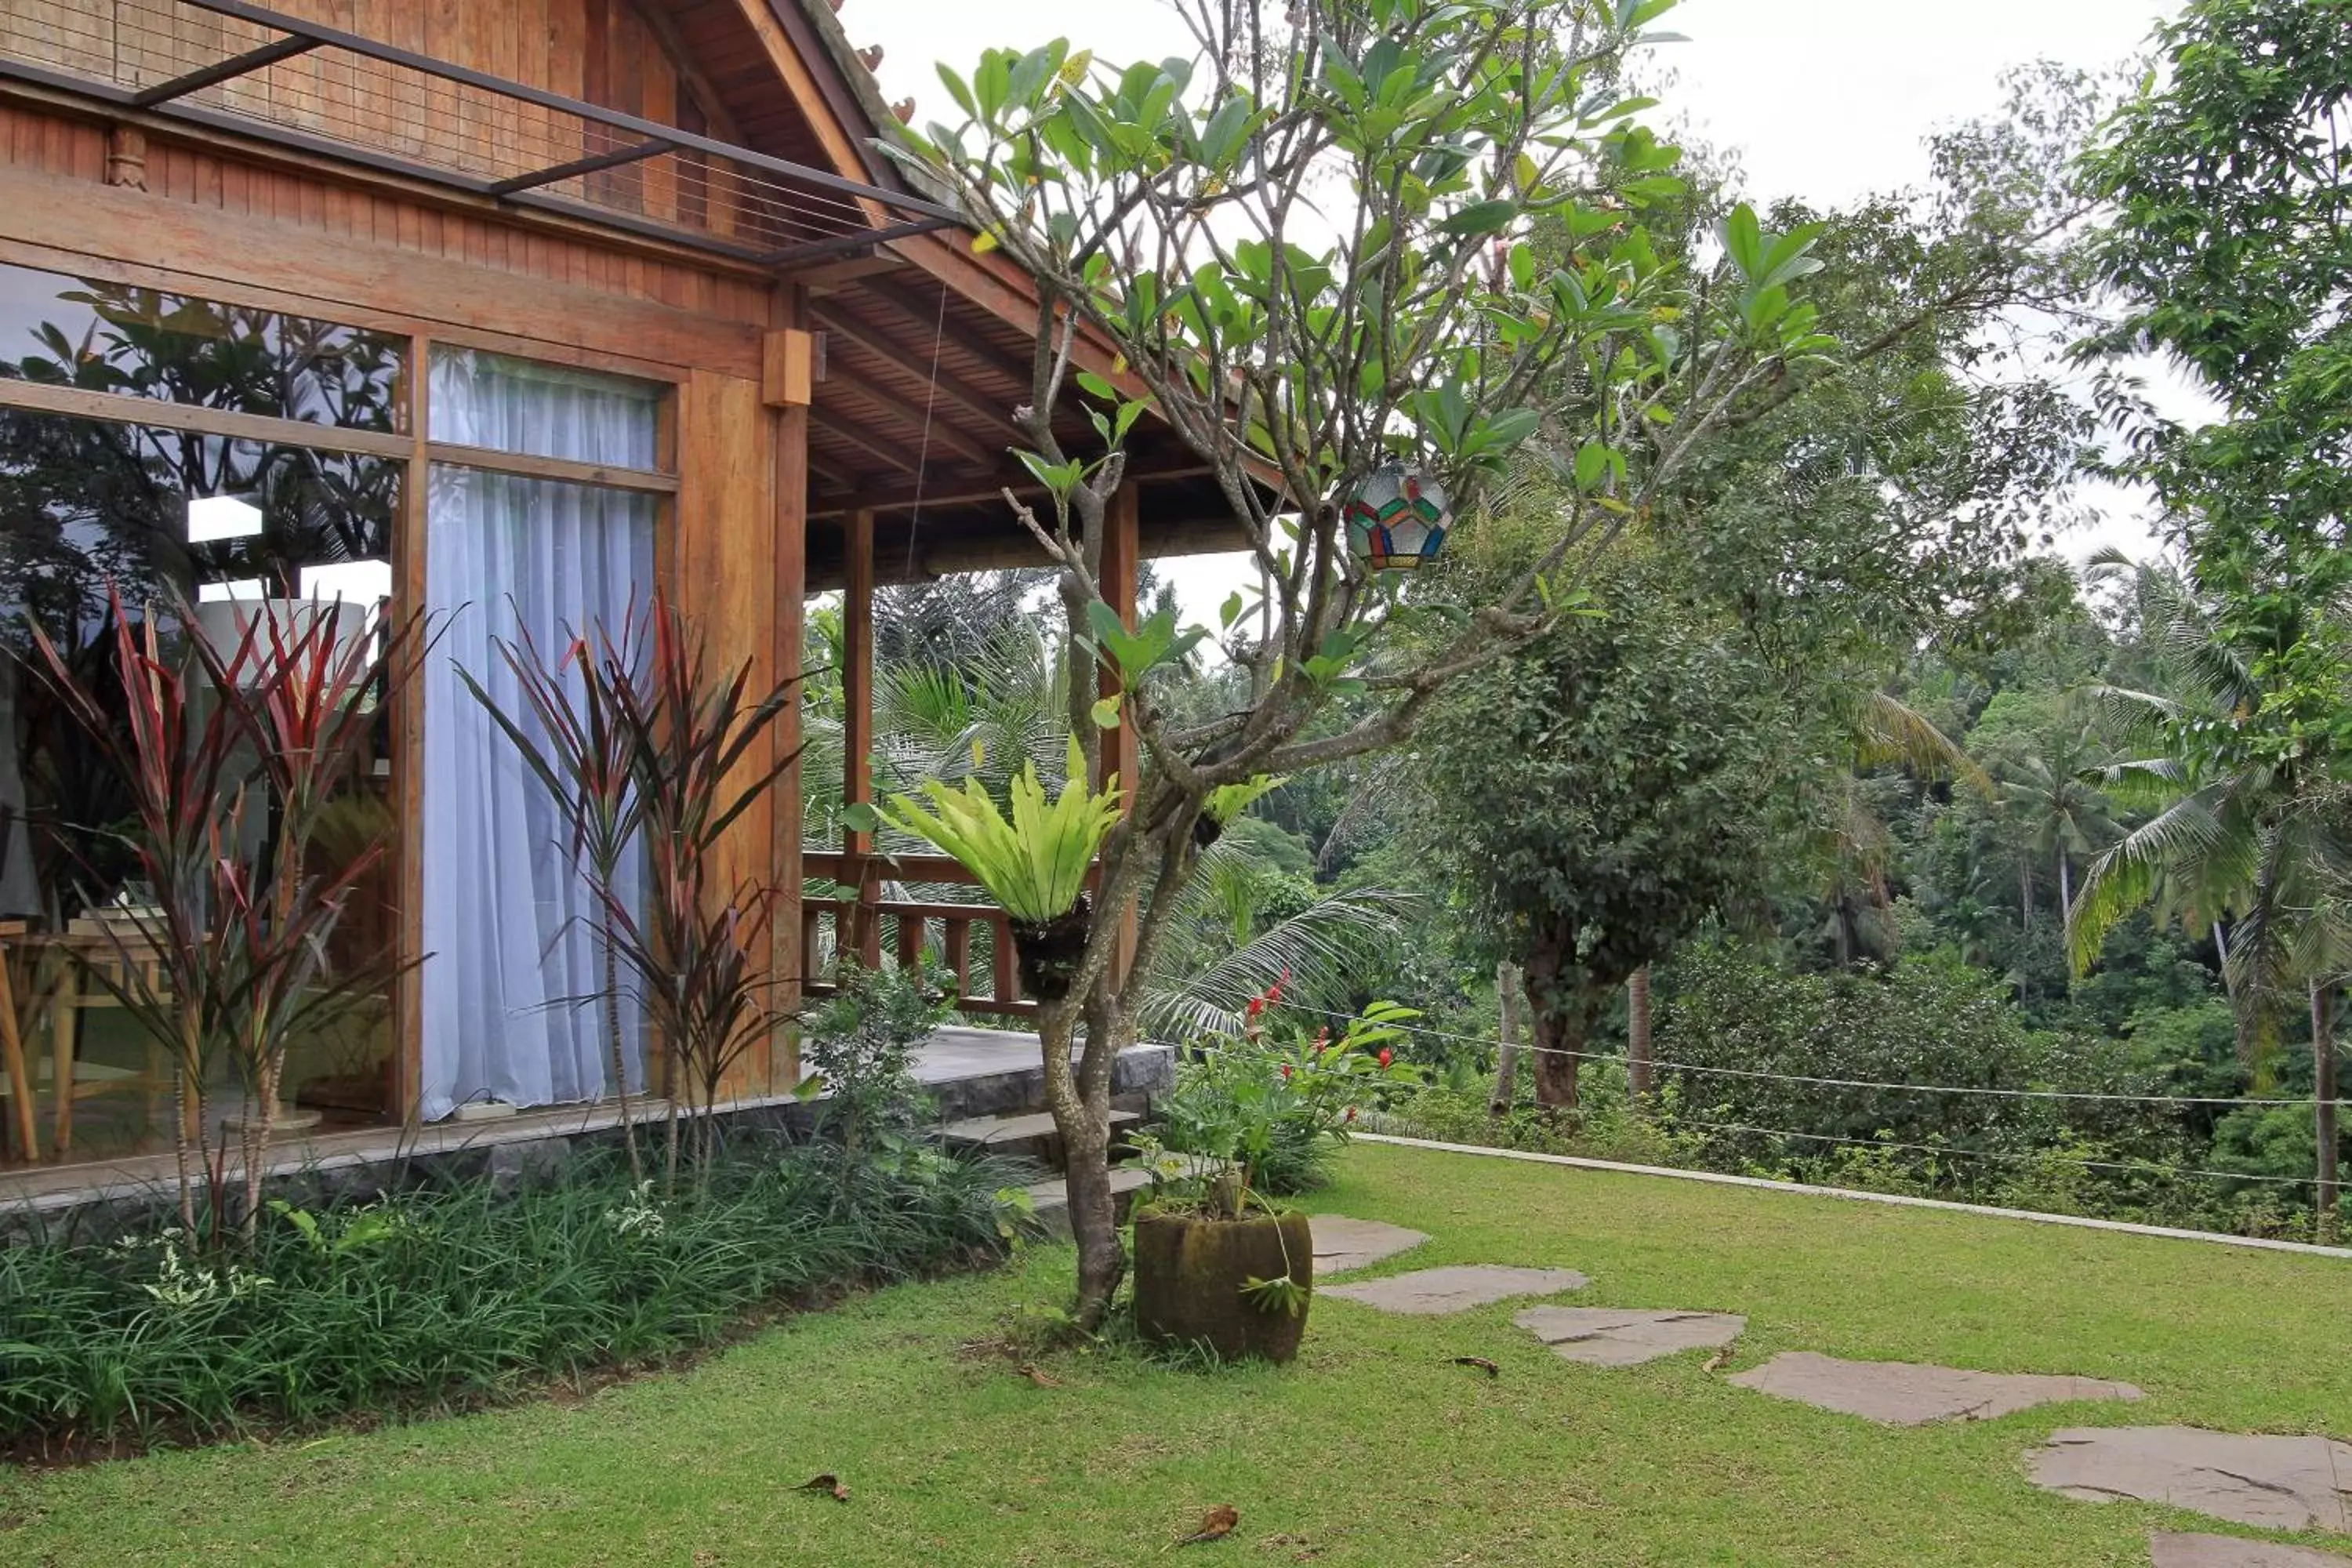 Property building, Garden in Bucu View Resort